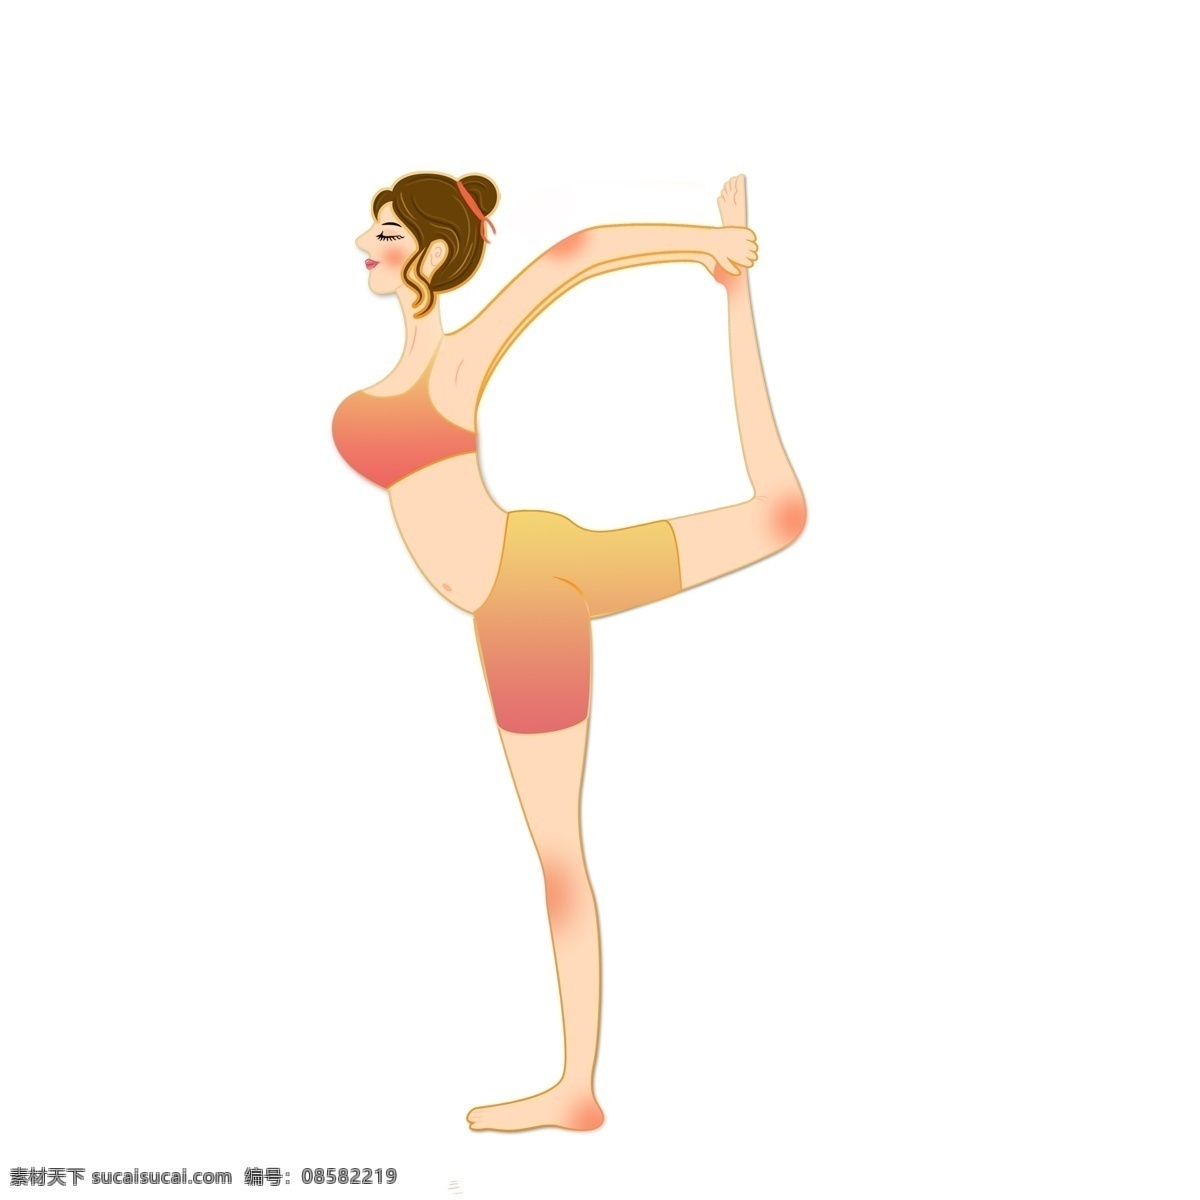 练 瑜伽 人物 图案 元素 女孩 跳舞 设计元素 简约 锻炼 练瑜伽 元素装饰 装饰图案 元素设计 手绘元素 psd元素